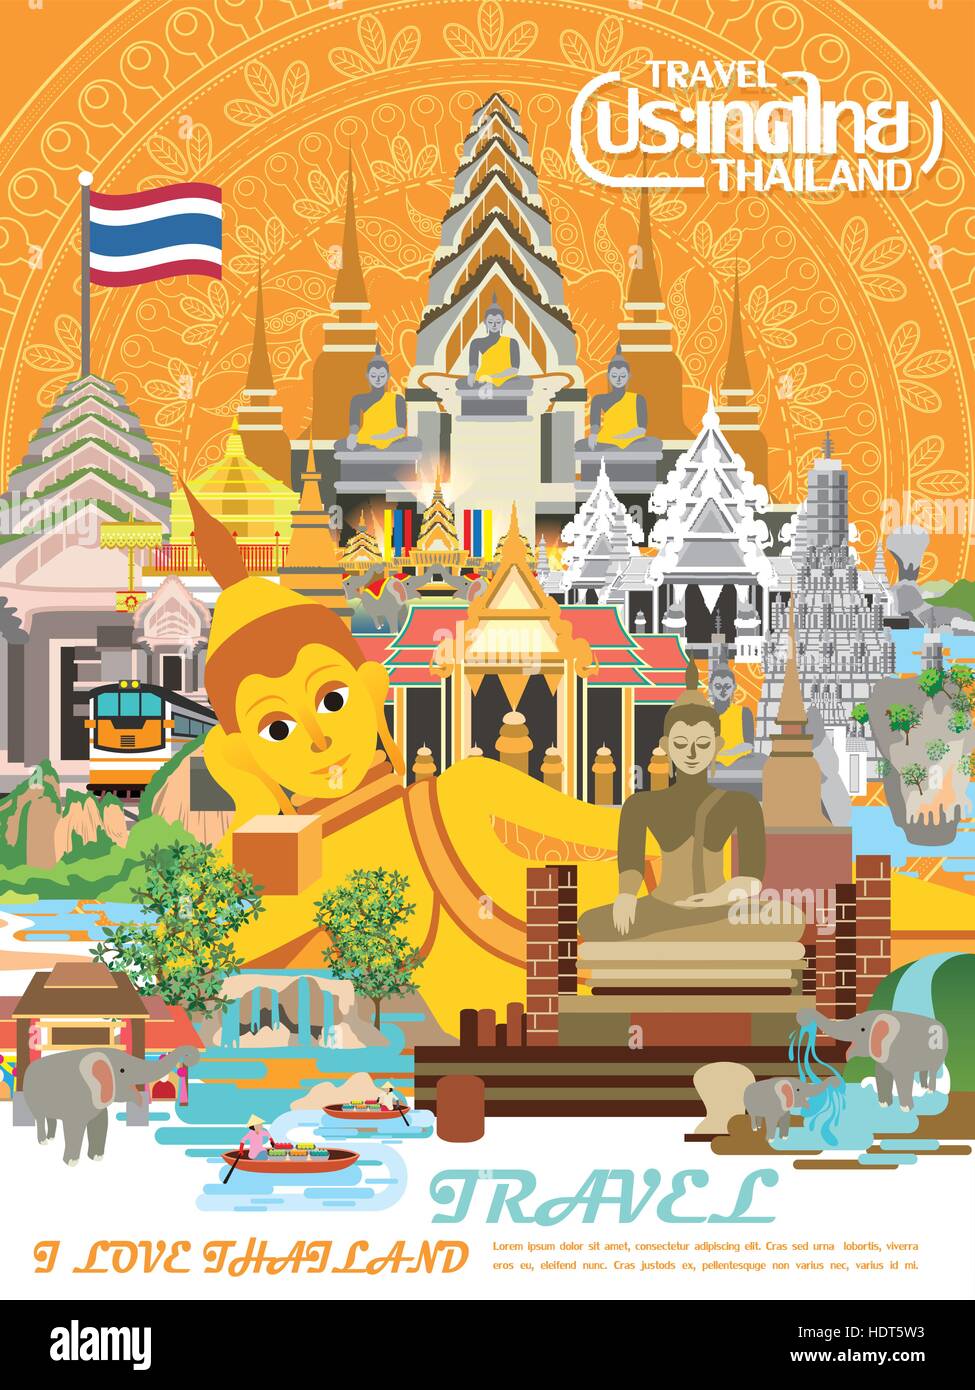 La Thaïlande coloré travel concept affiche en télévision style - Thaïlande Pays nom en thaï Illustration de Vecteur